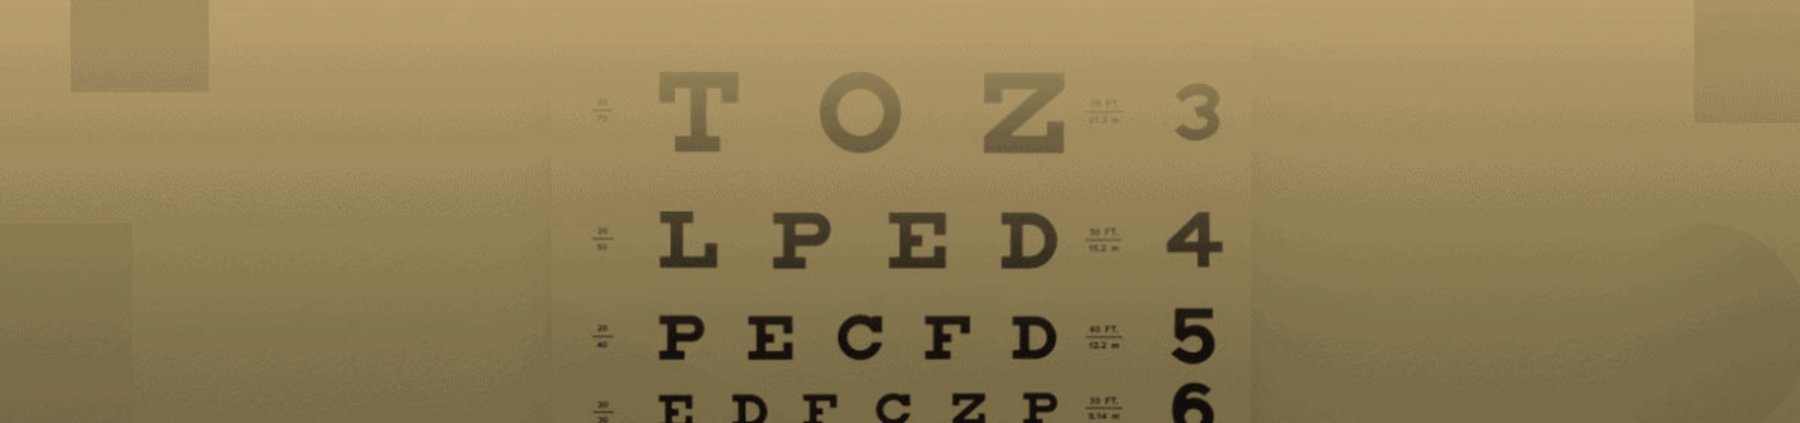 Augenlasern - welches Verfahren ist geeignet für mich?